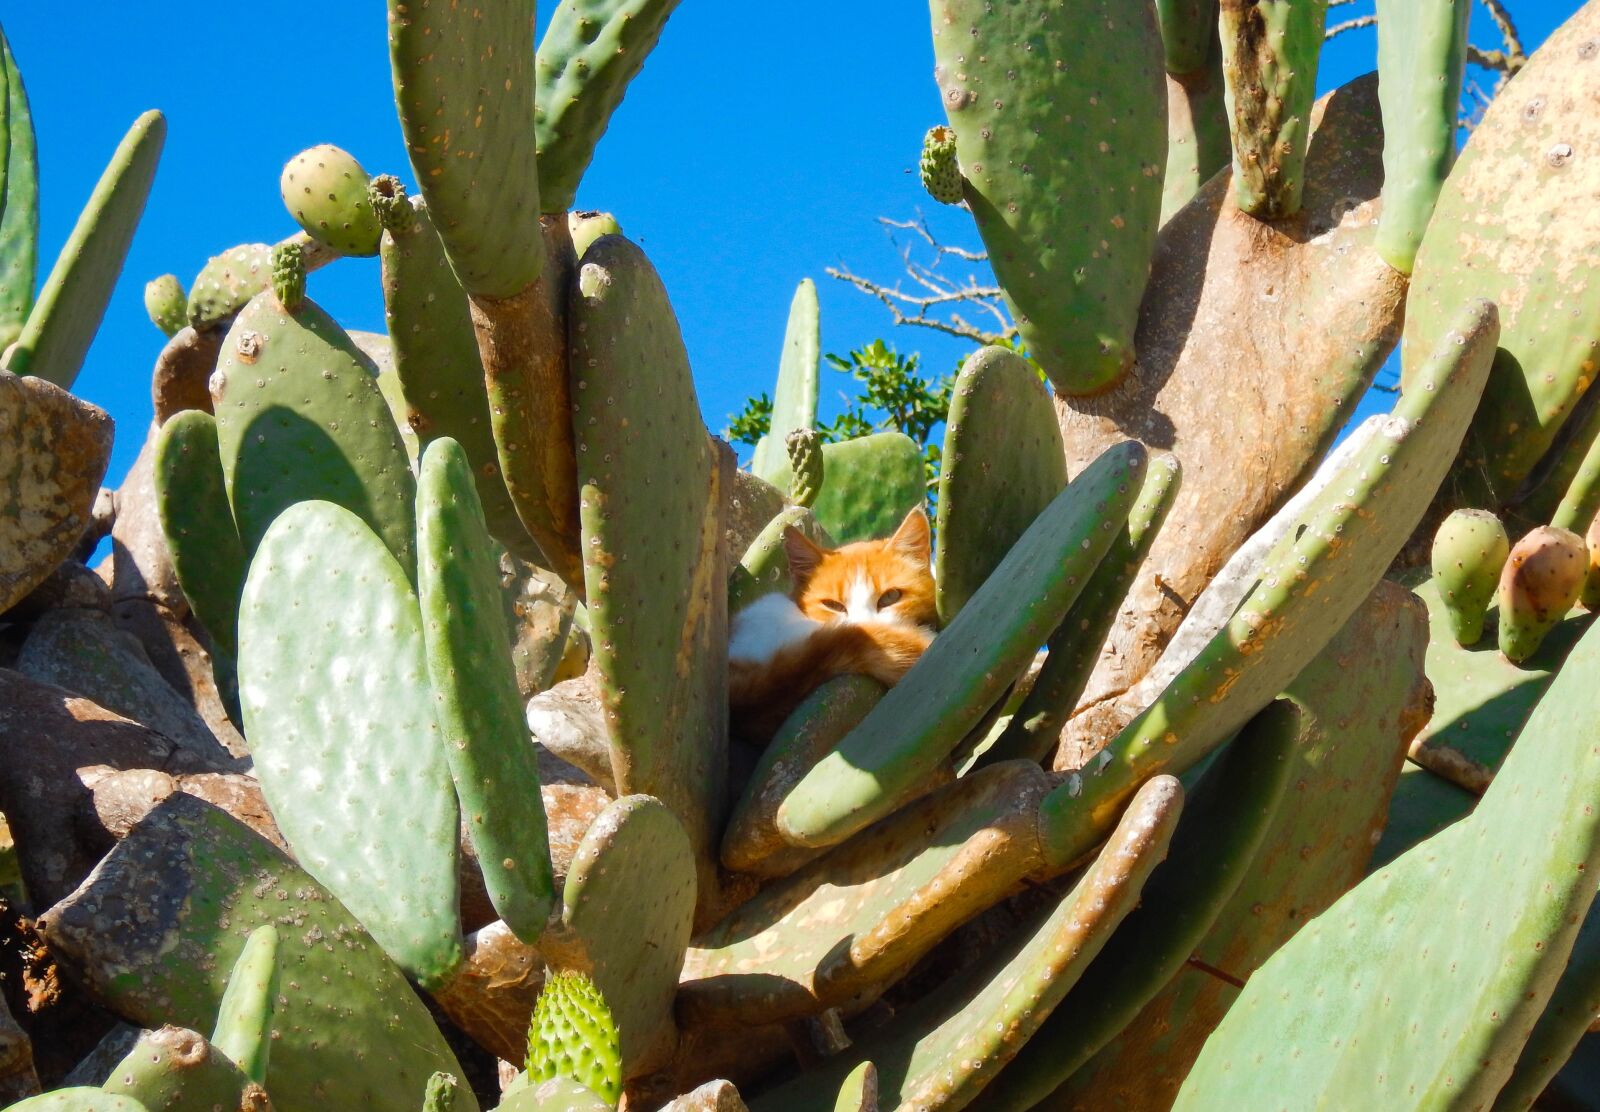 Nikon Coolpix AW130 sample photo. Cat, cactus, animals photography